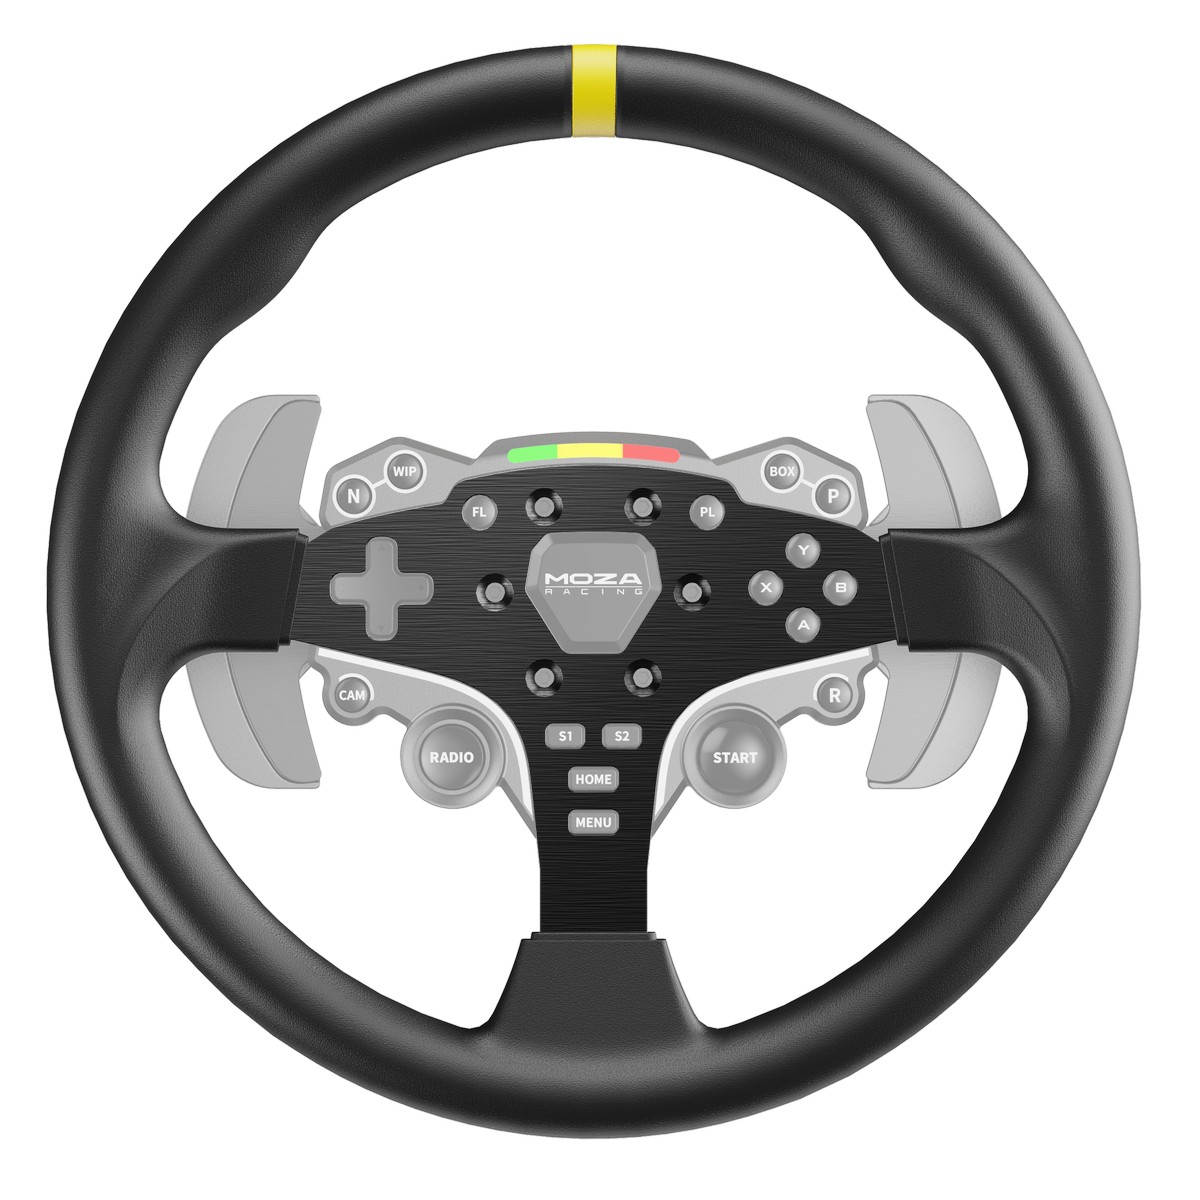 MOZA Racing ES 12 inch Steering Wheel Rim For Racing Simulators (RS046)